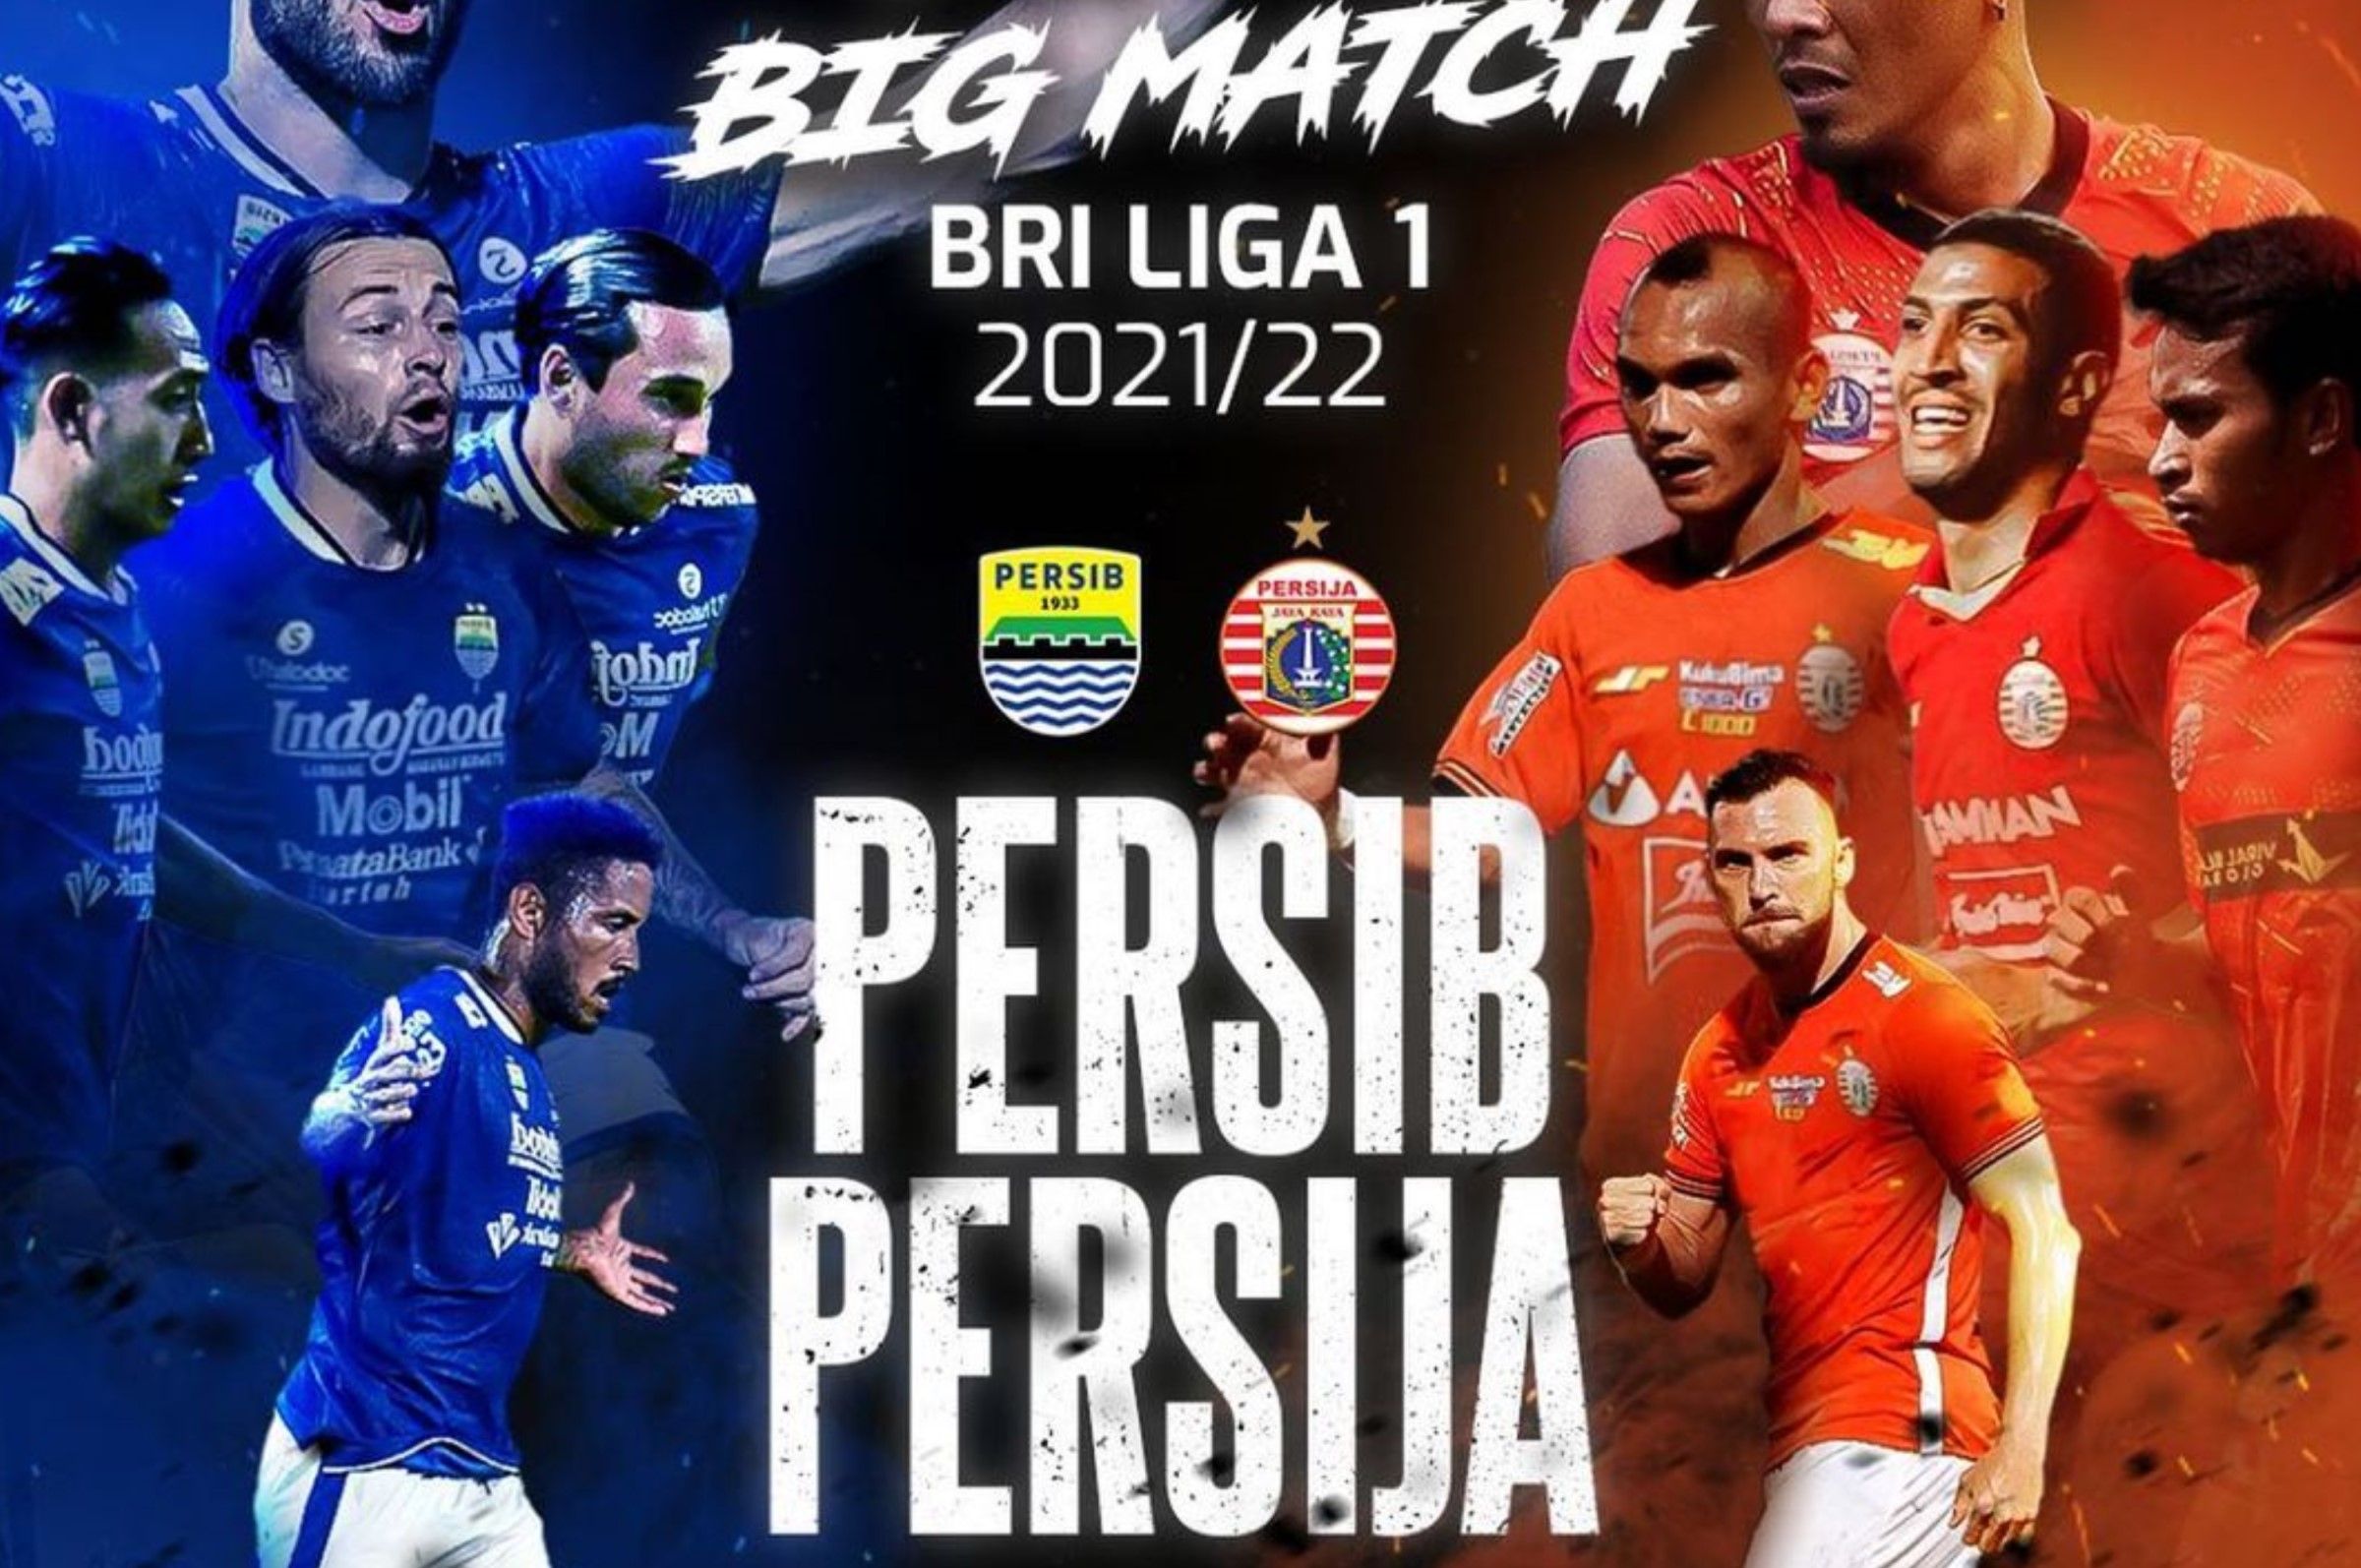 Jelang Pertandingan Persib vs Persija, Segini Kesiapan Maung Bandung